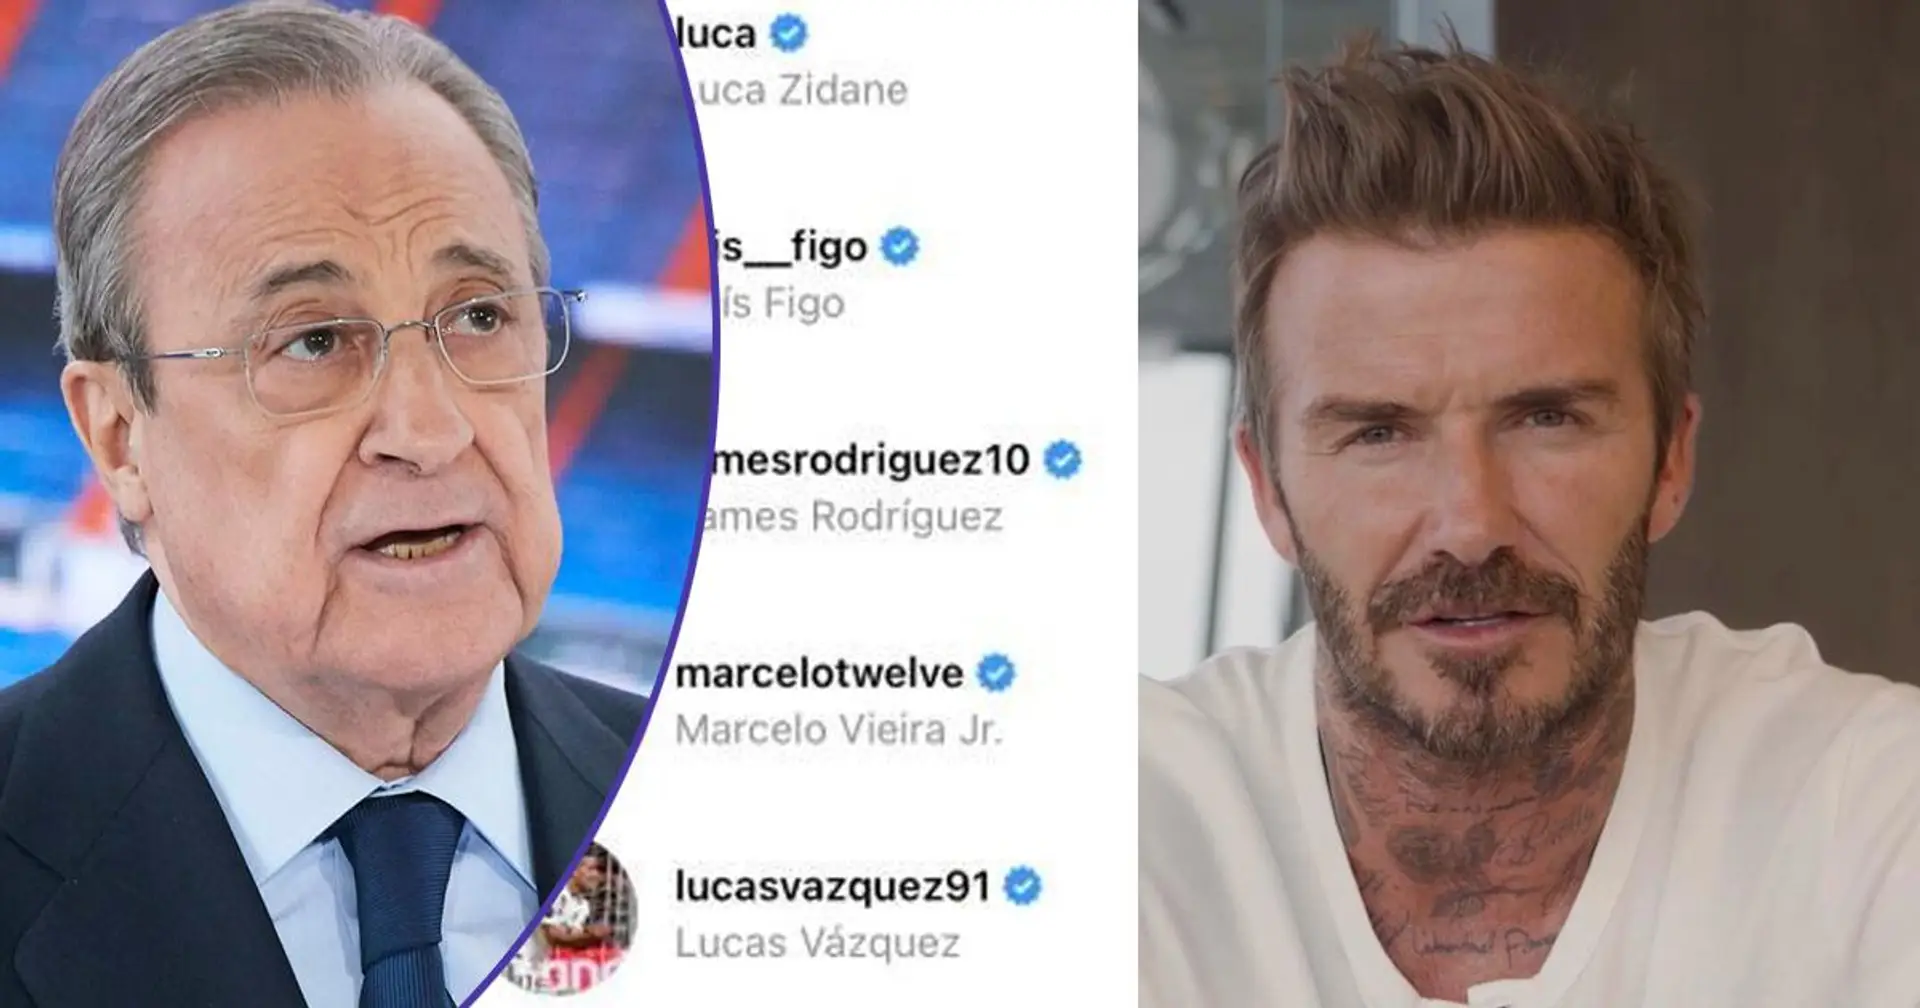 Modric, Marcelo et d'autres Madridistas "likent'' le post Instagram anti-ESL de Beckham